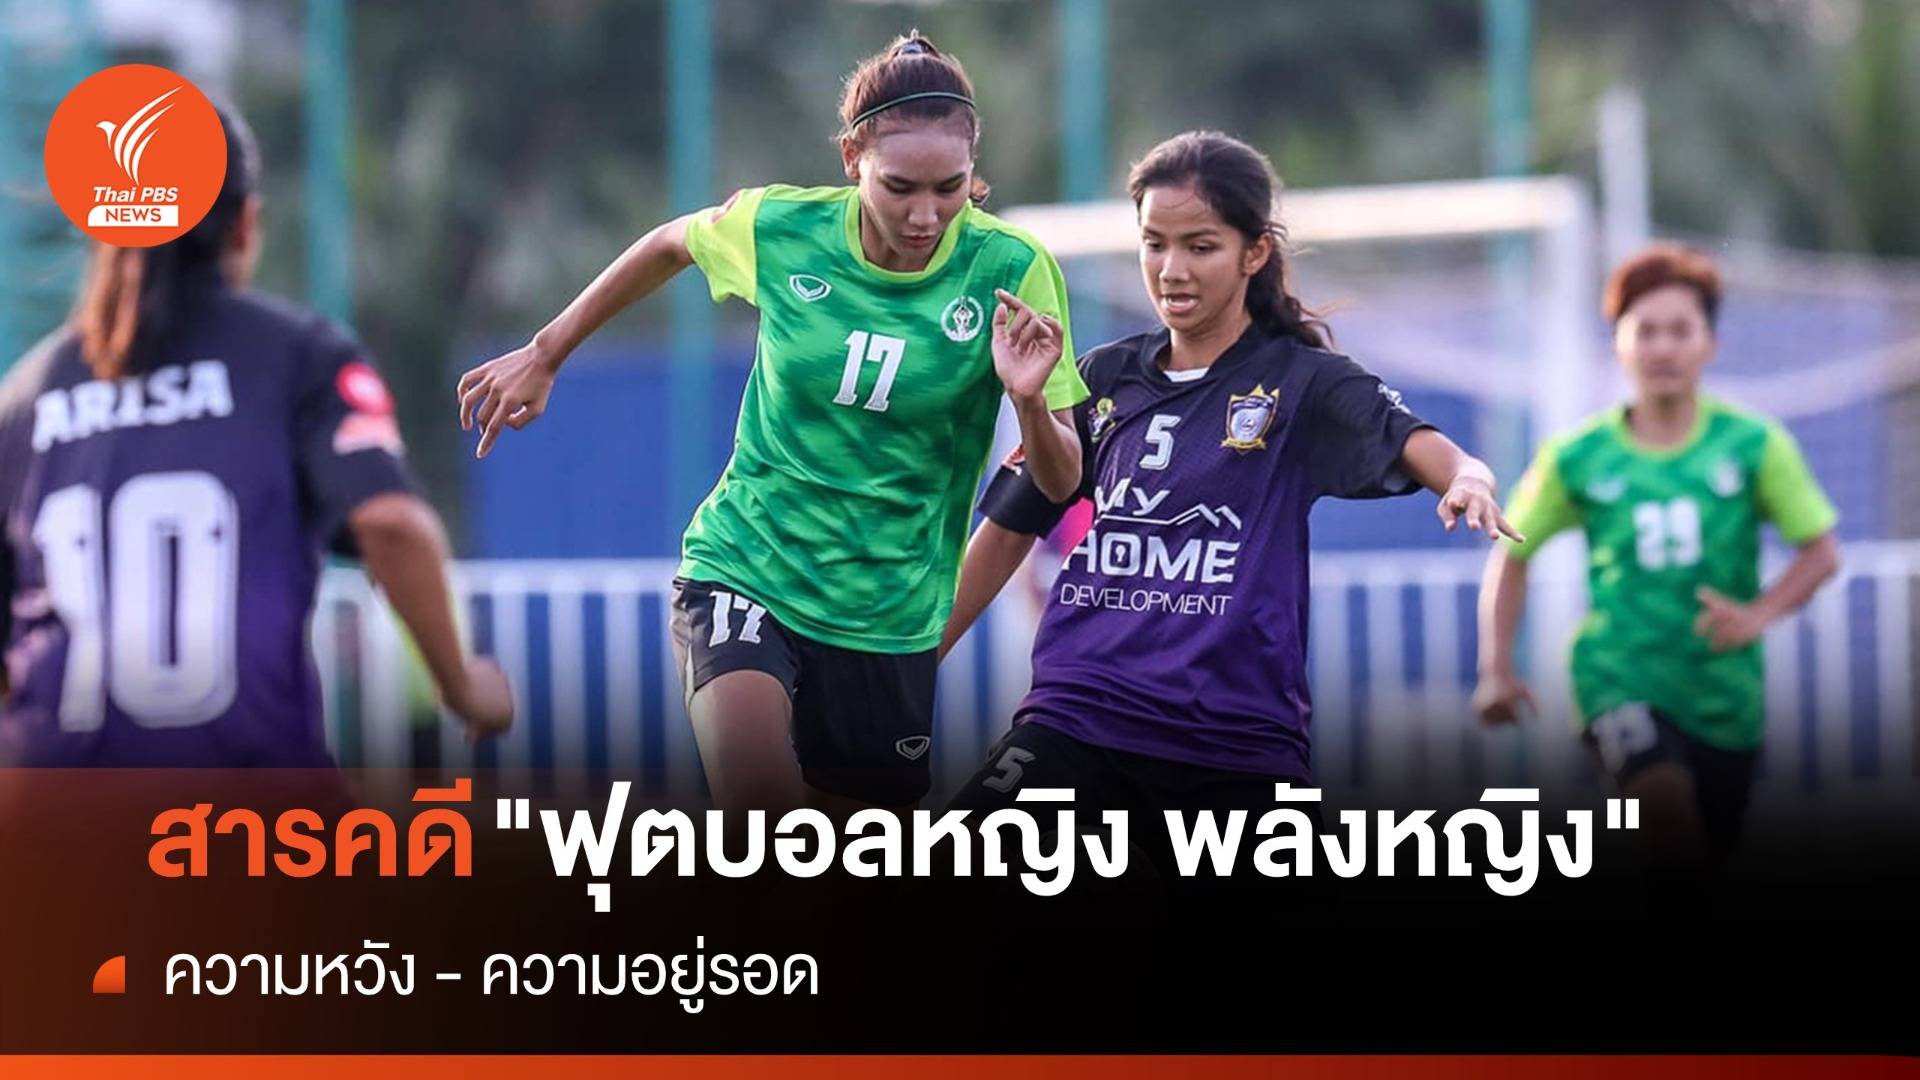 สารคดี "ฟุตบอลหญิง พลังหญิง" สะท้อนทุกแง่มุมของวงการฟุตบอลหญิงไทย  